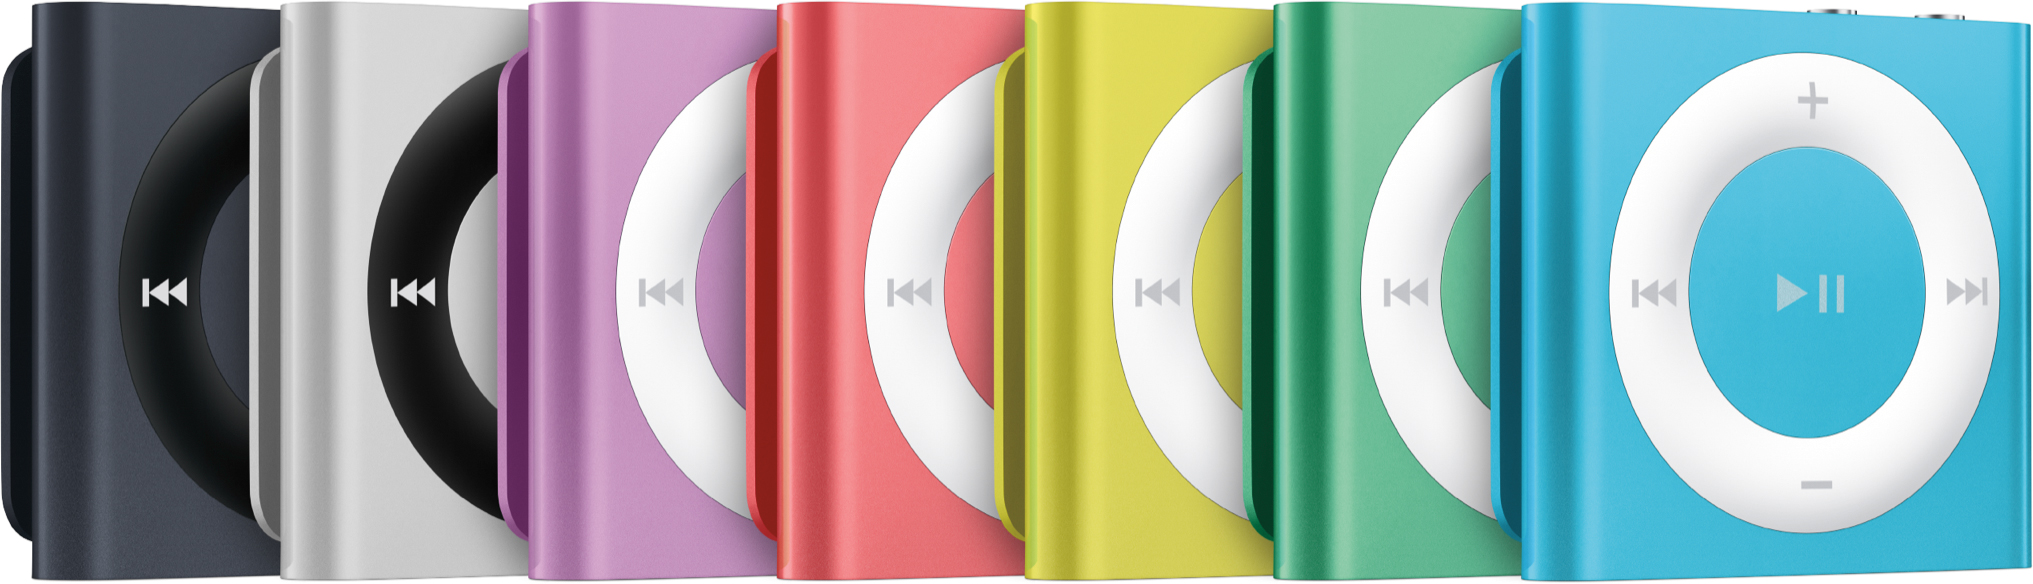 Novas cores de iPods shuffle